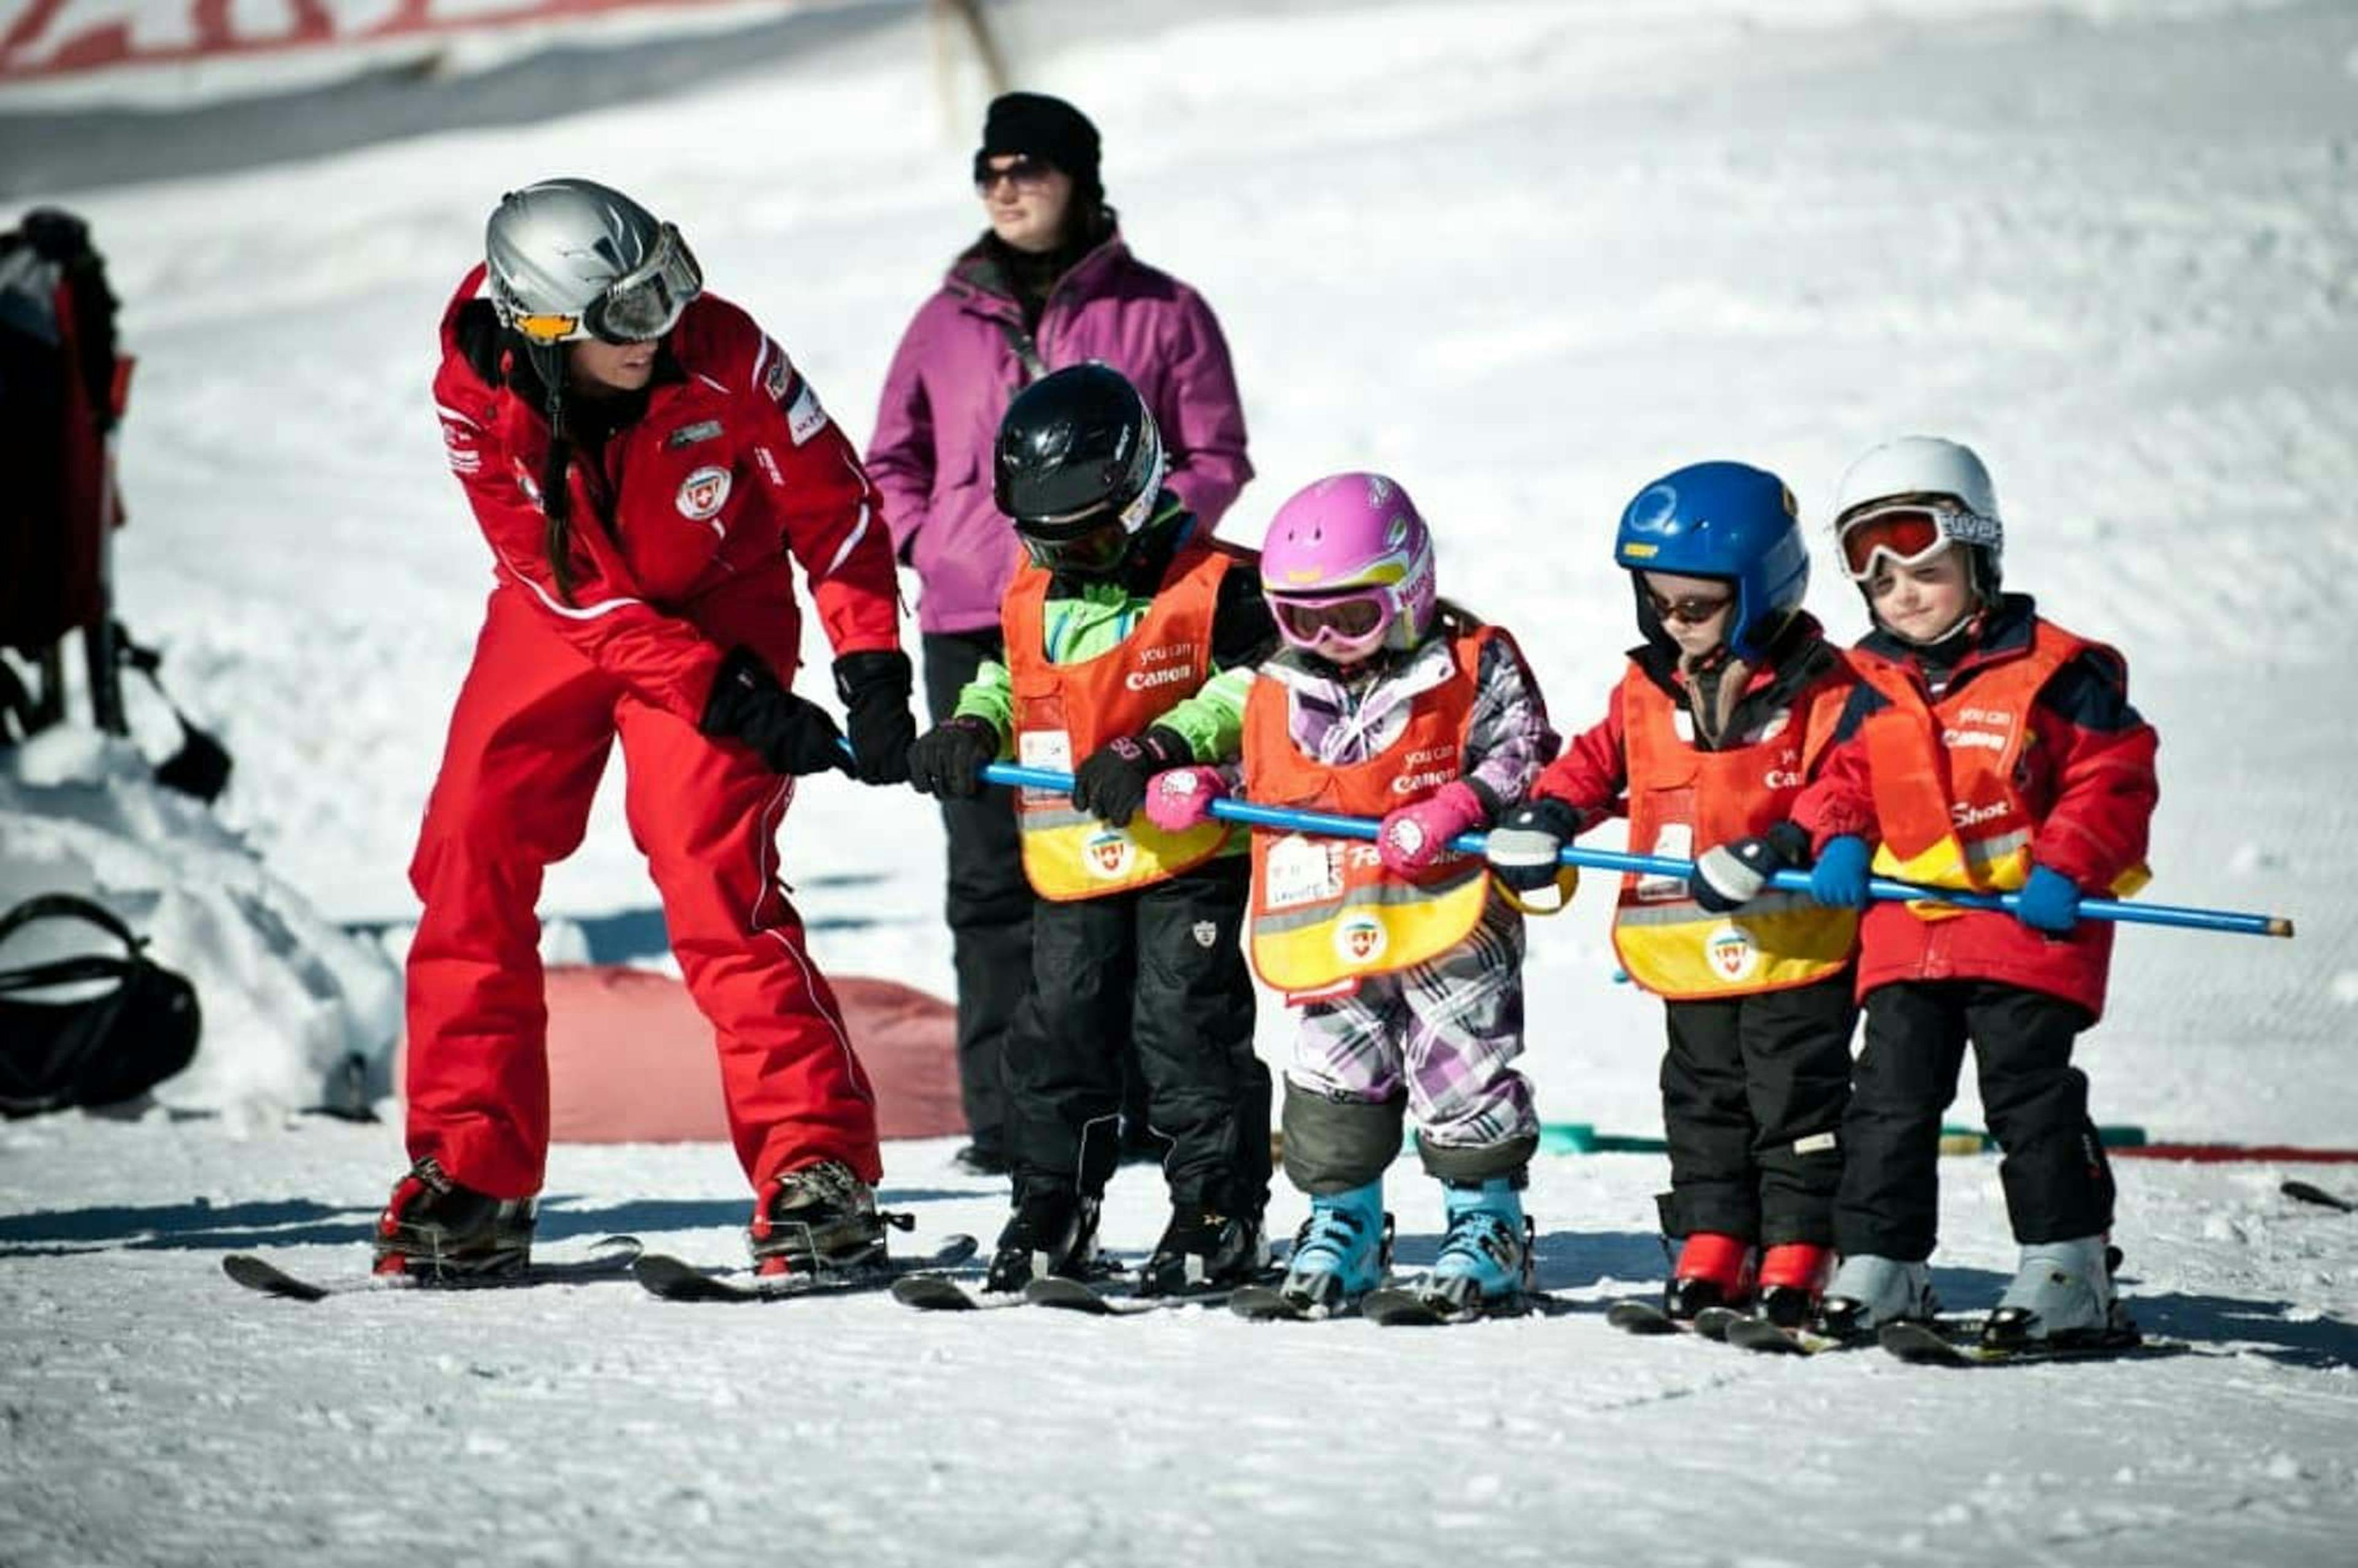 Bambini che sciano